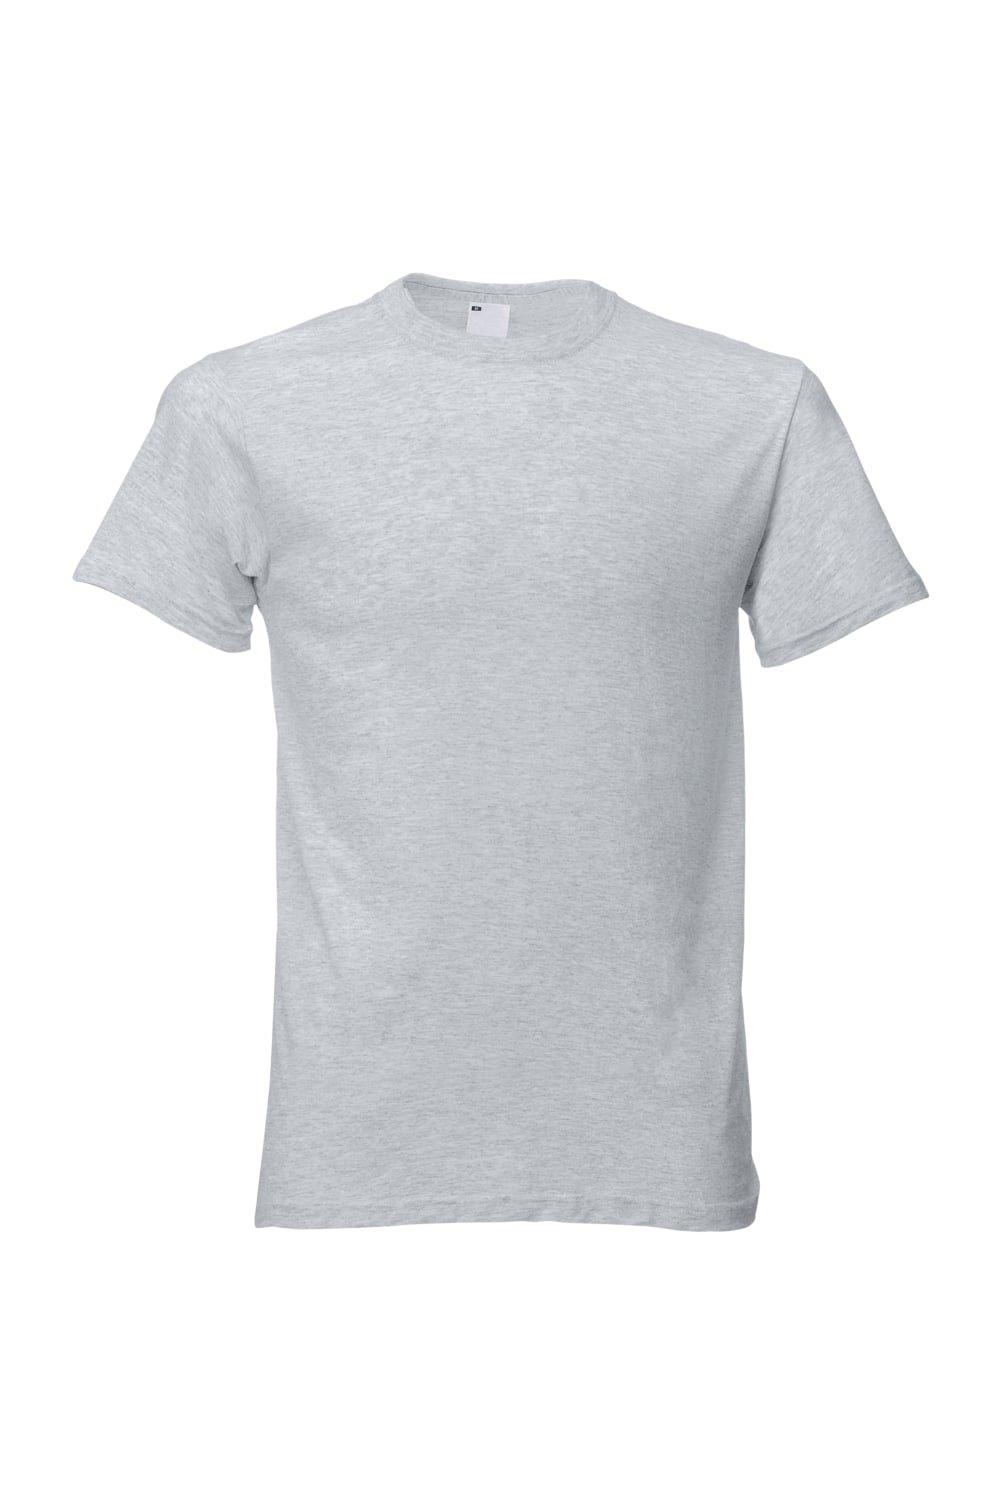 Повседневная футболка с коротким рукавом Universal Textiles, серый мужская футболка кот с мороженым 2xl серый меланж